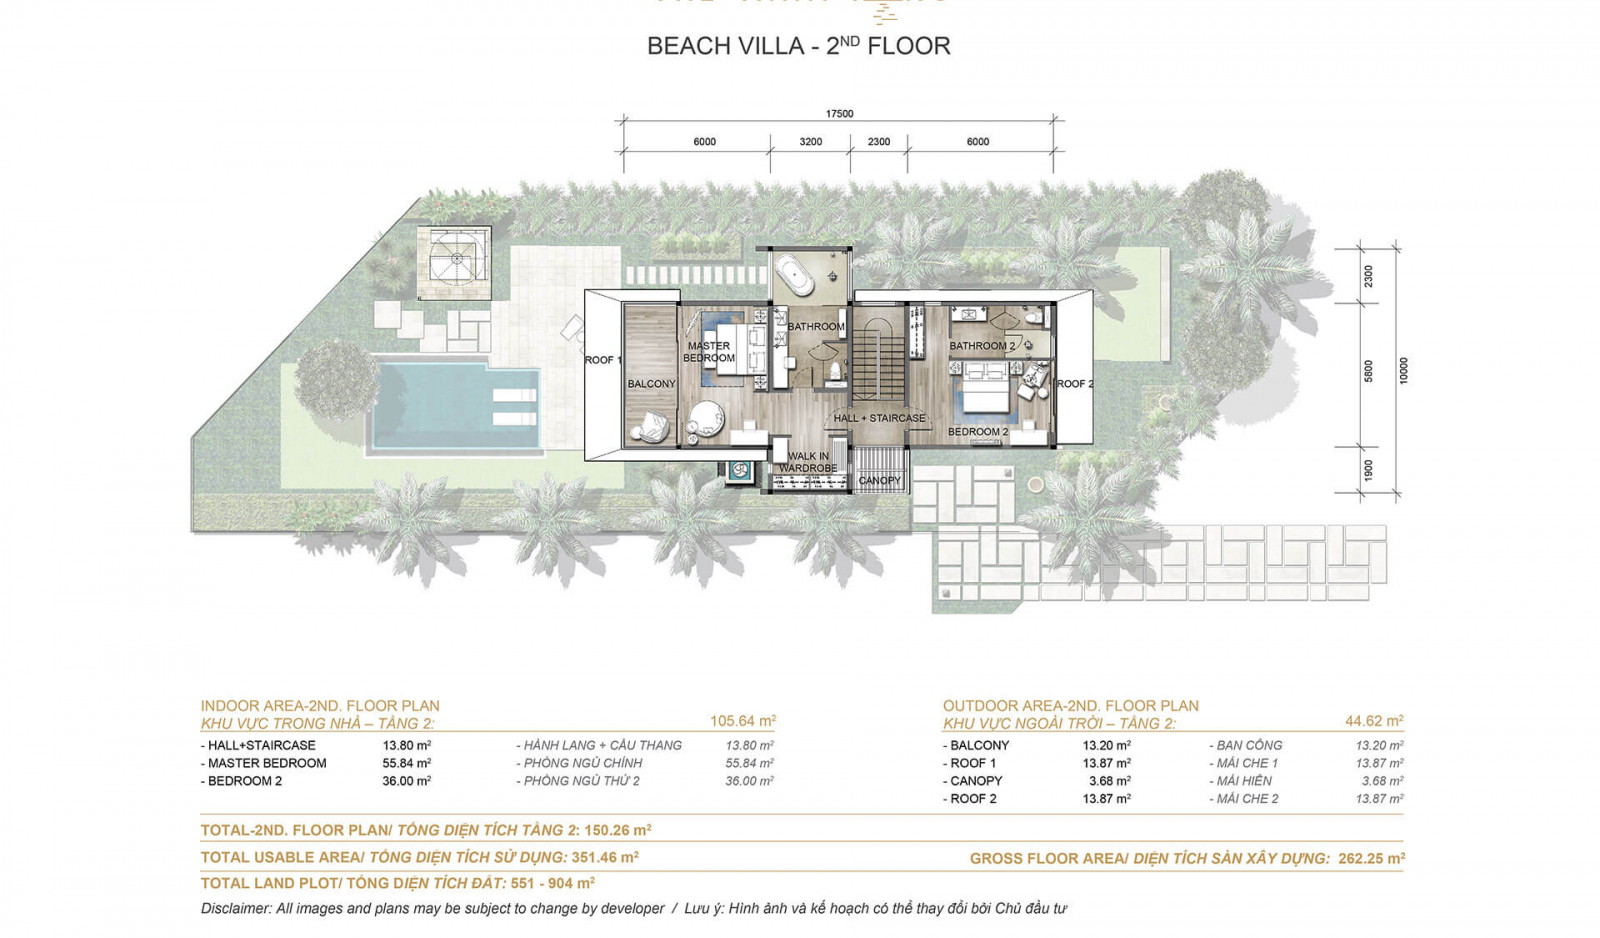 Beachfront Villa Melia Ho tram The Hamptons 3 phong ngu